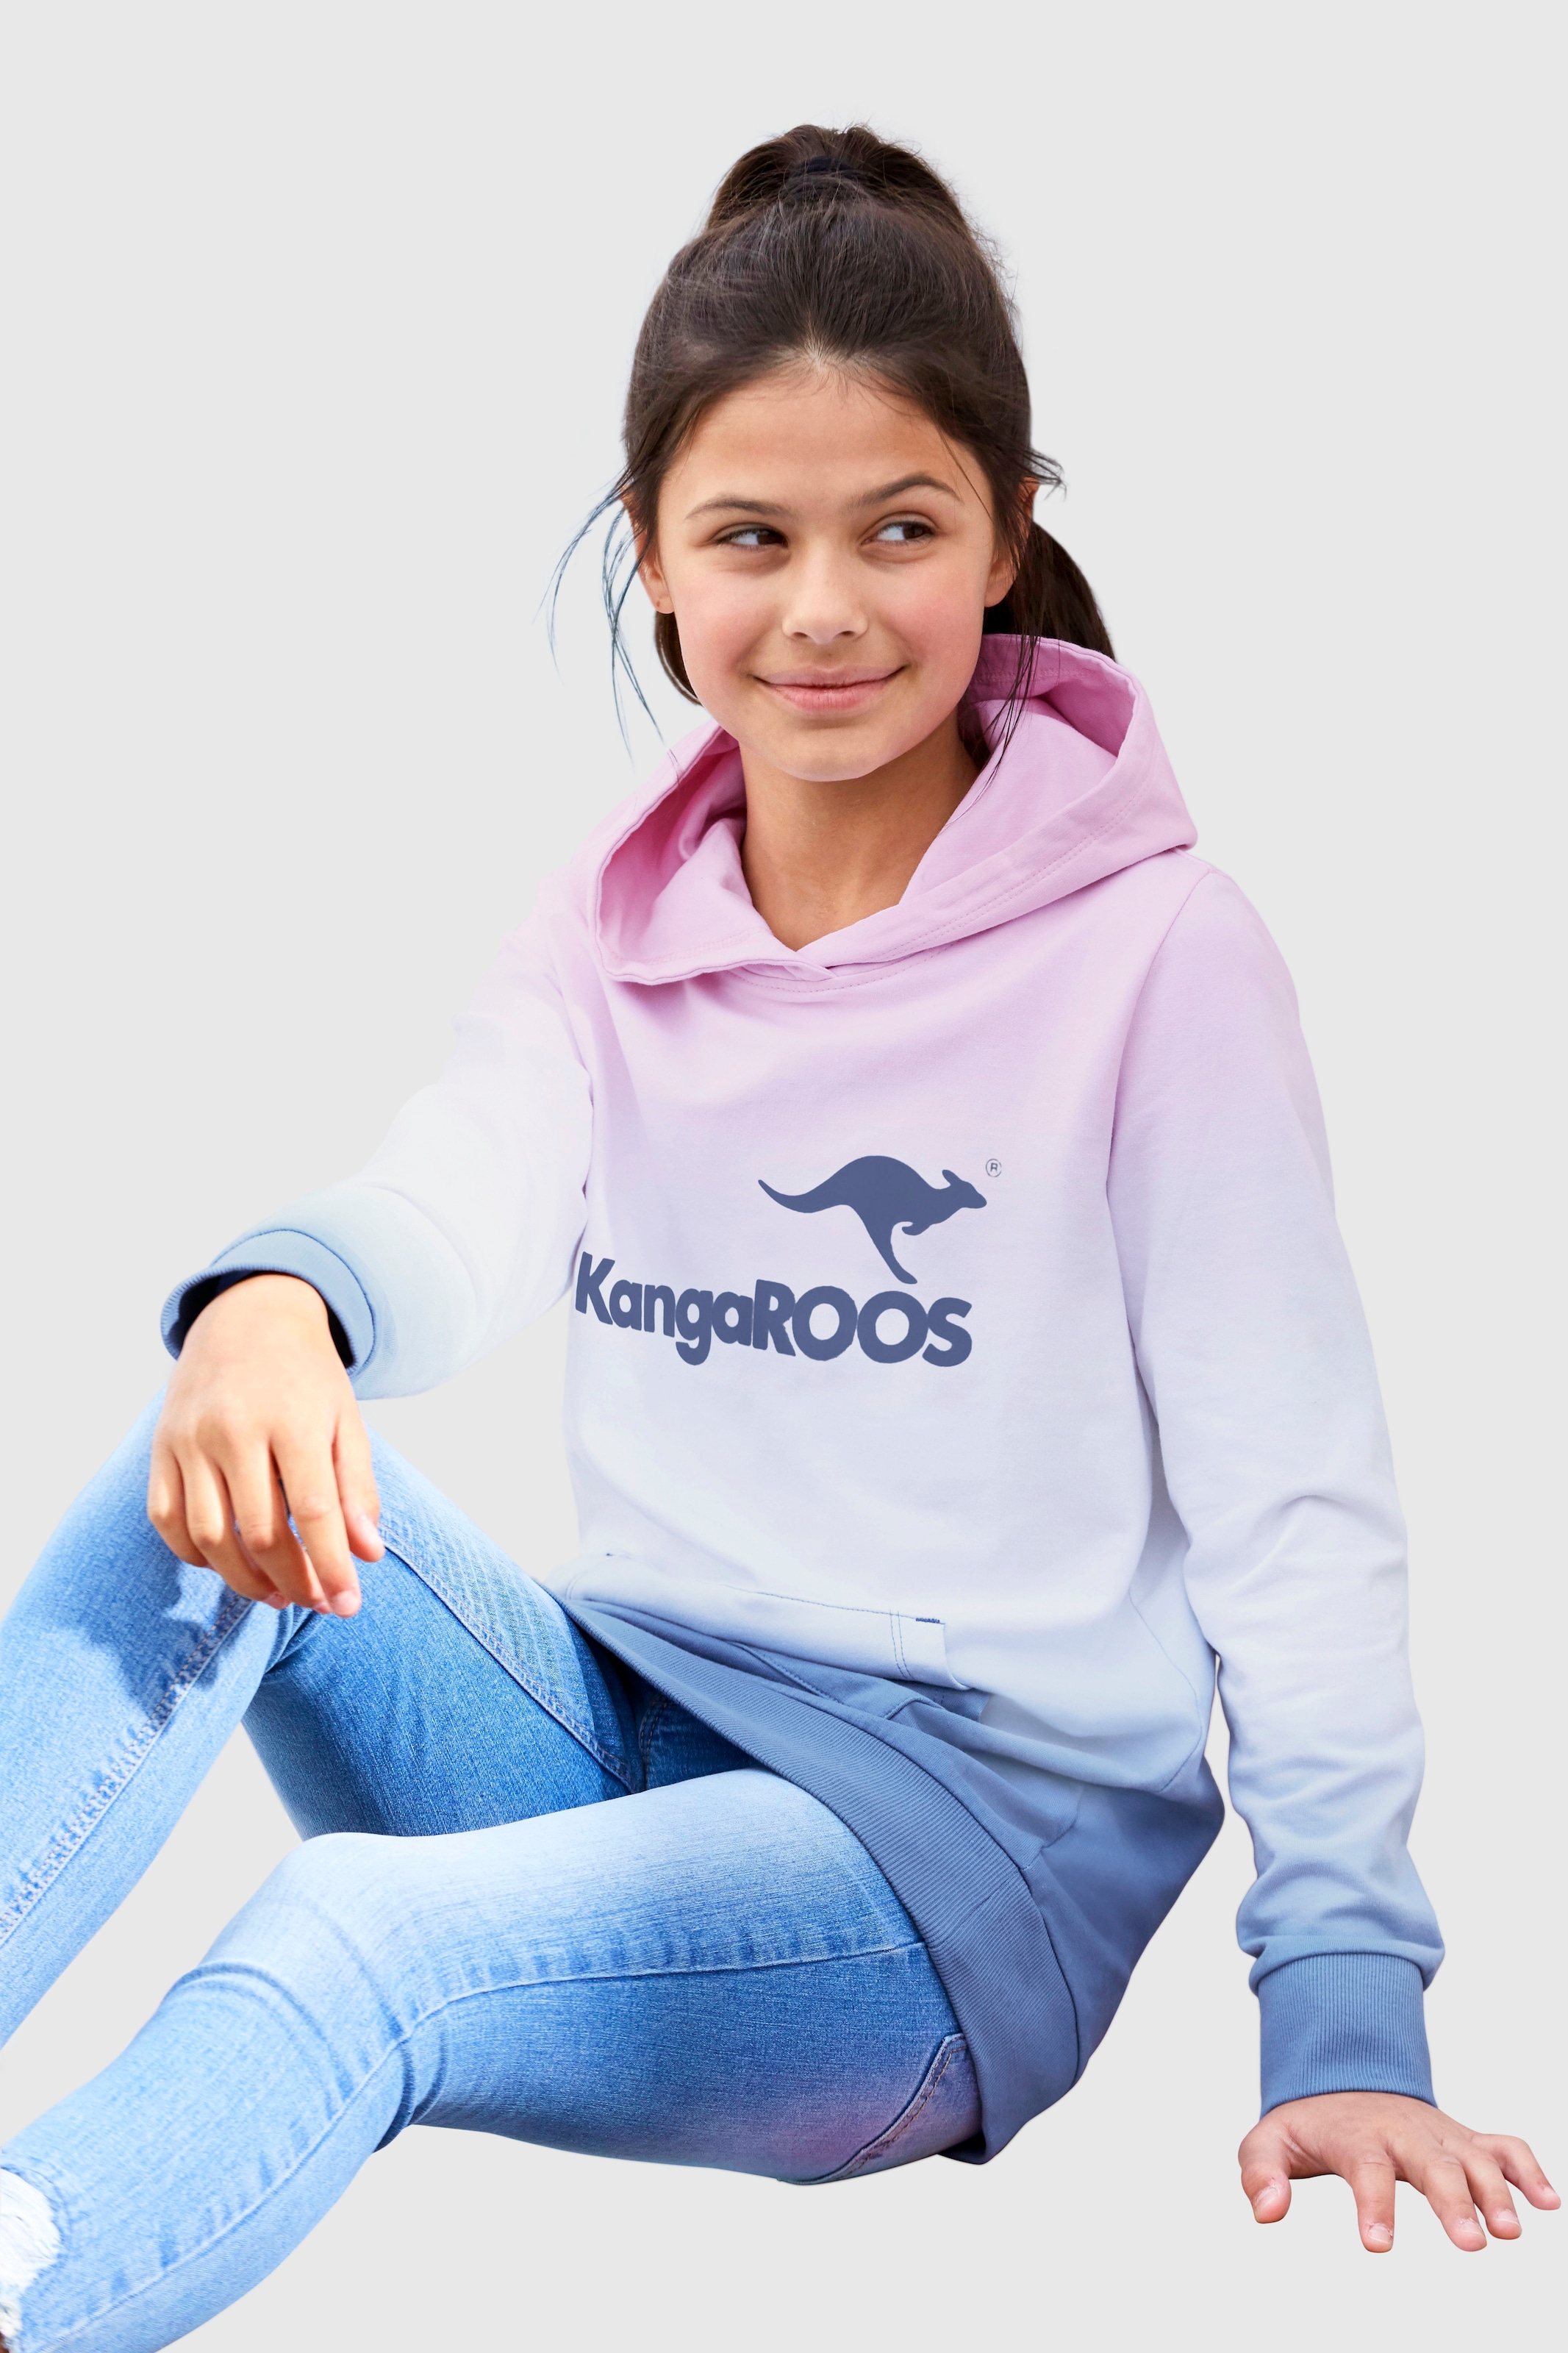 KangaROOS Kapuzensweatshirt, im modischen Farbverlauf